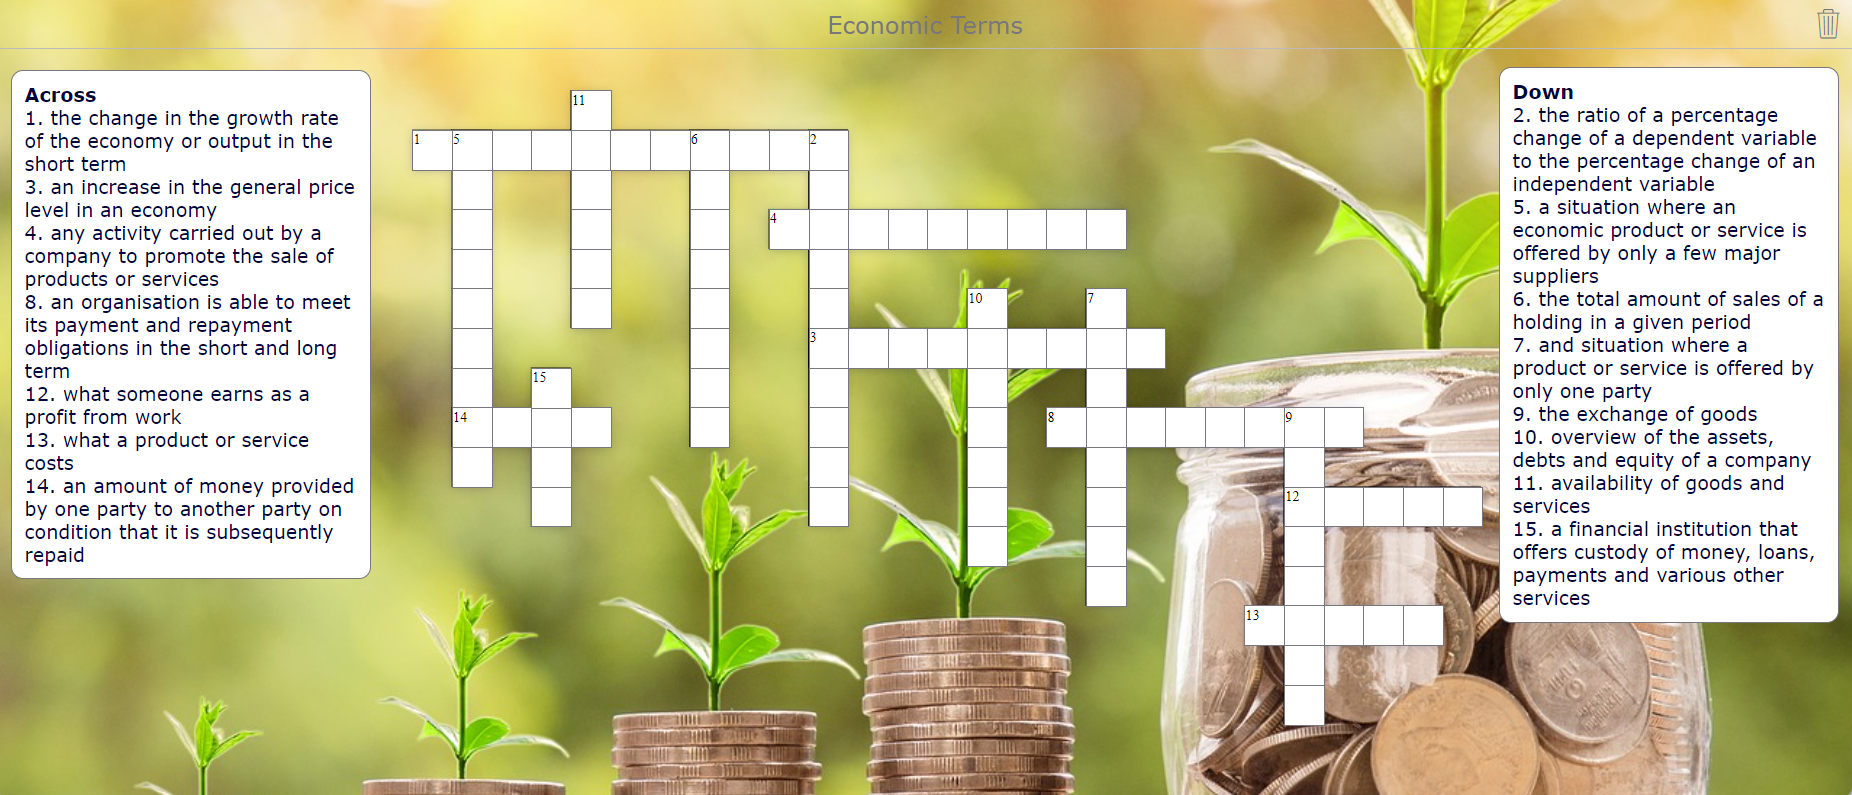 Economic Terms Crossword